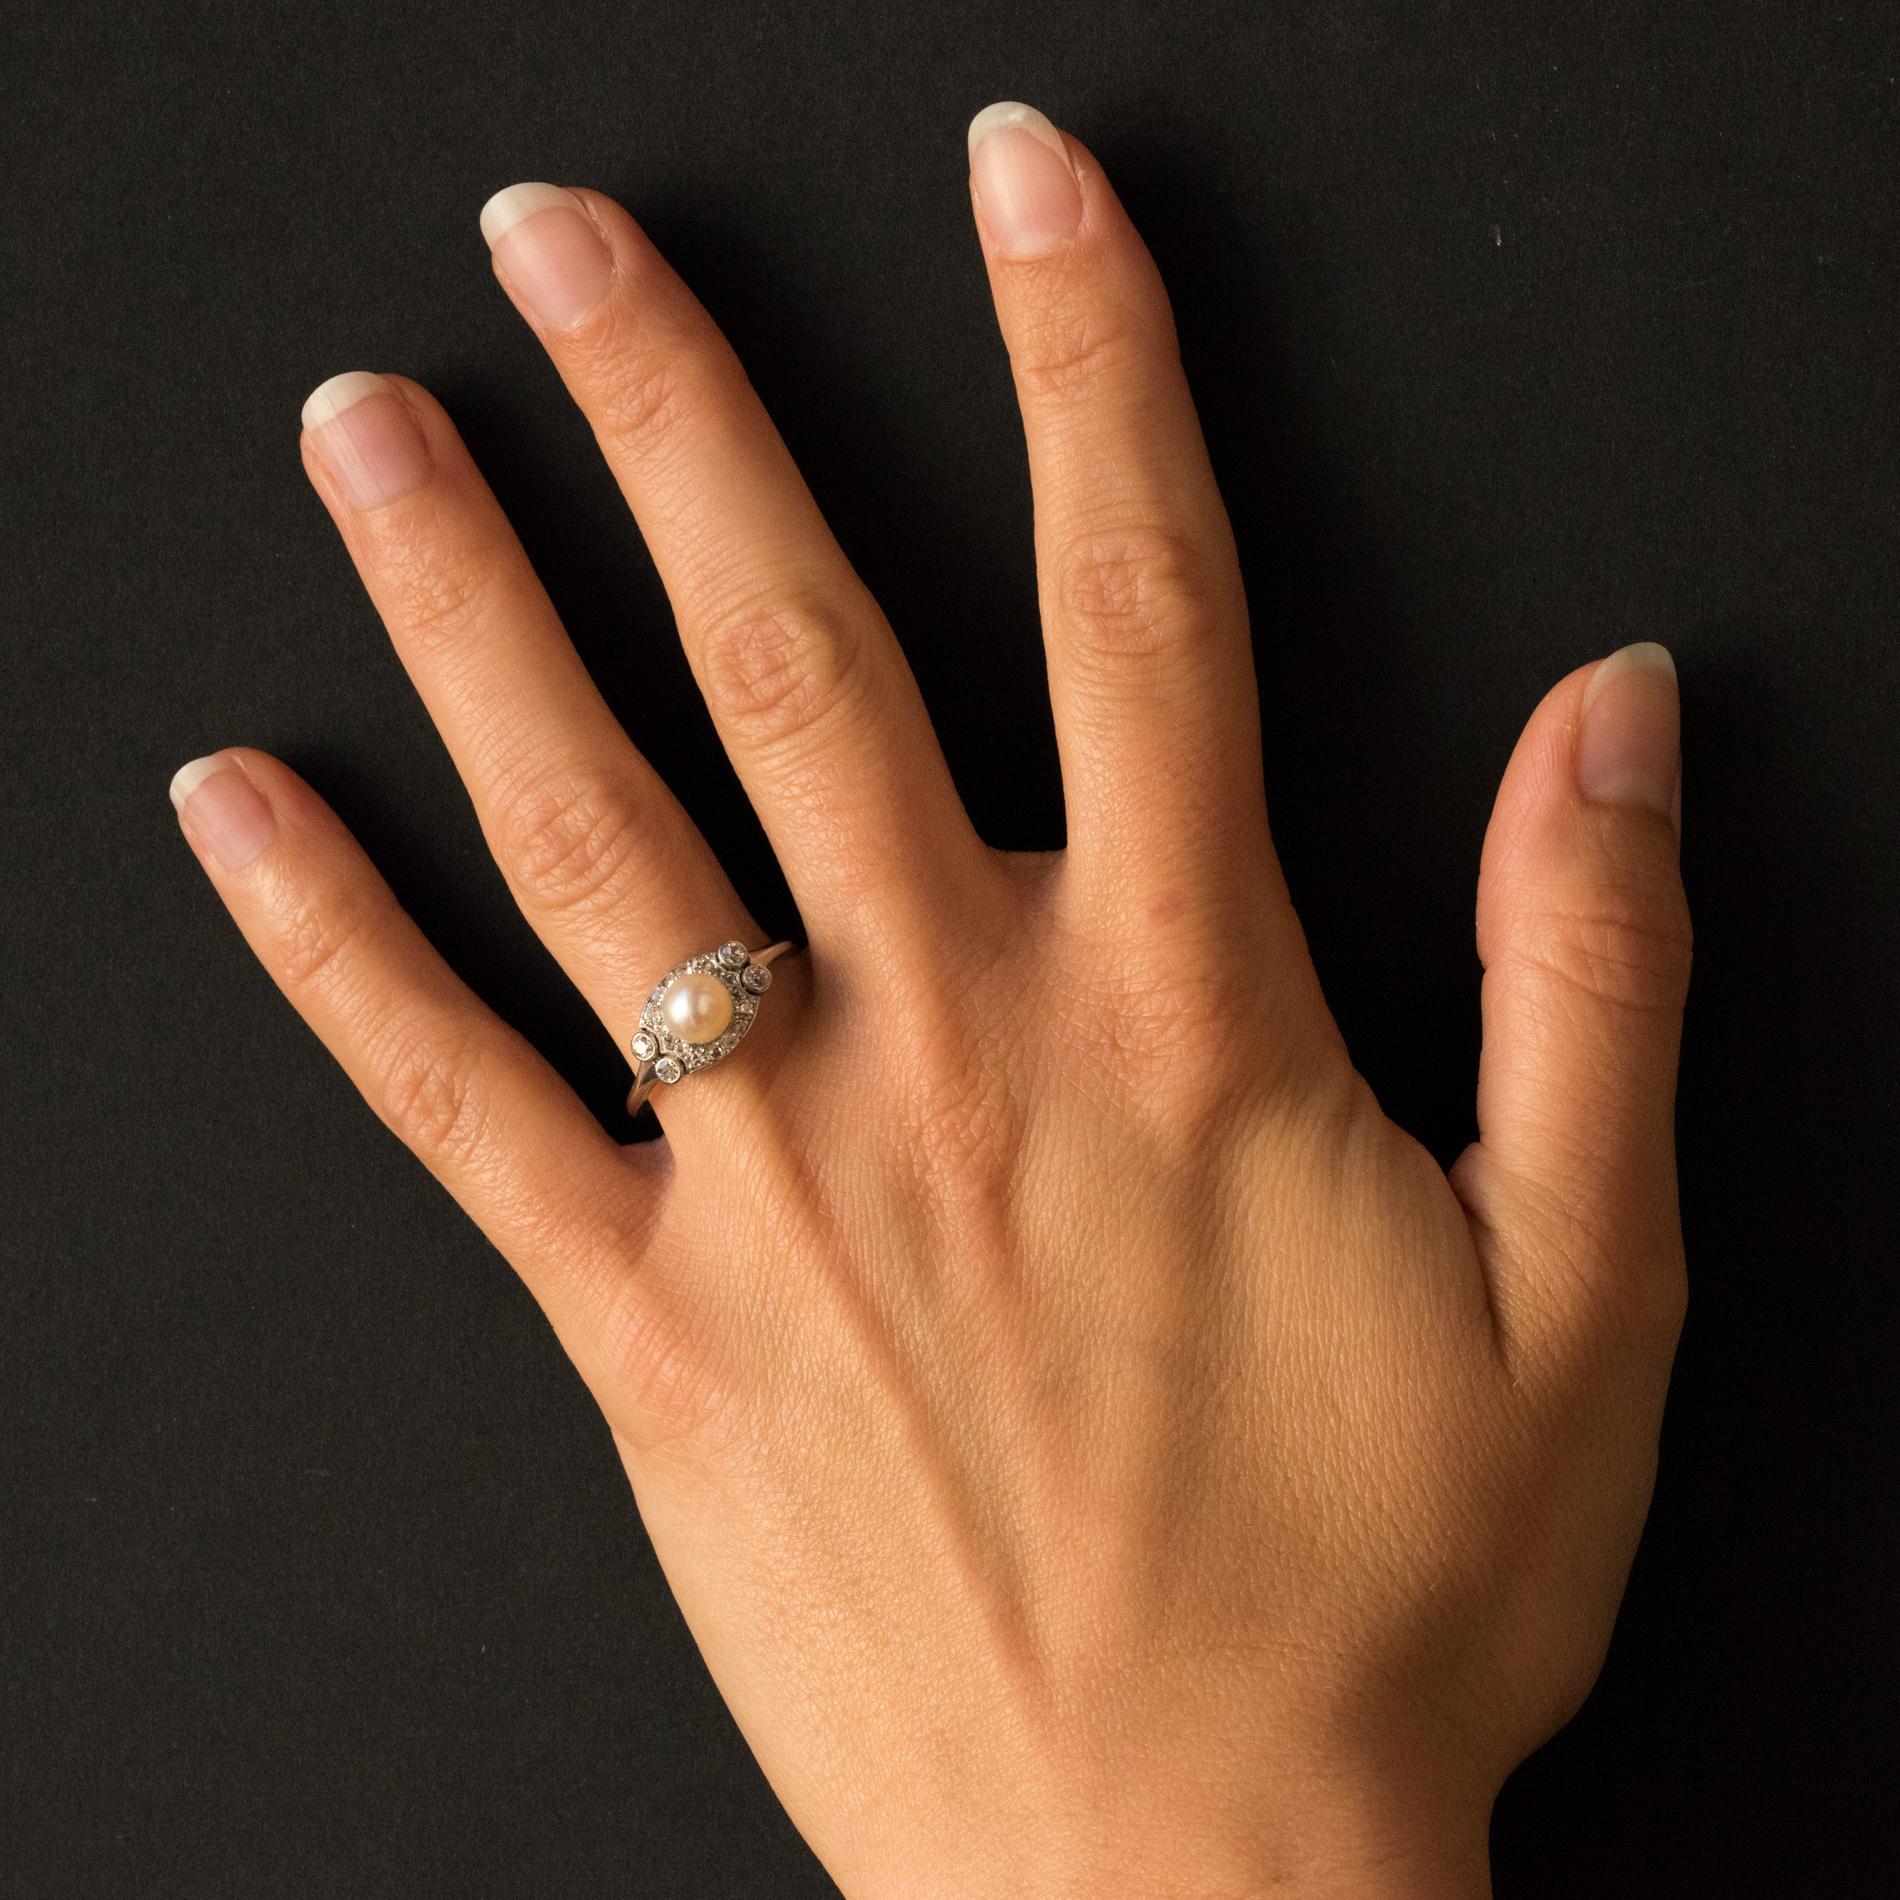 Platinring, Hundekopfpunze.
Dieser elegante antike Ring ist auf seiner ovalen Spitze mit Diamanten im Rosenschliff besetzt und hat die Größe 8/8. Auf beiden Seiten des Rings sind 2 x 2 Diamanten im Antikschliff gefasst. In der Mitte befindet sich